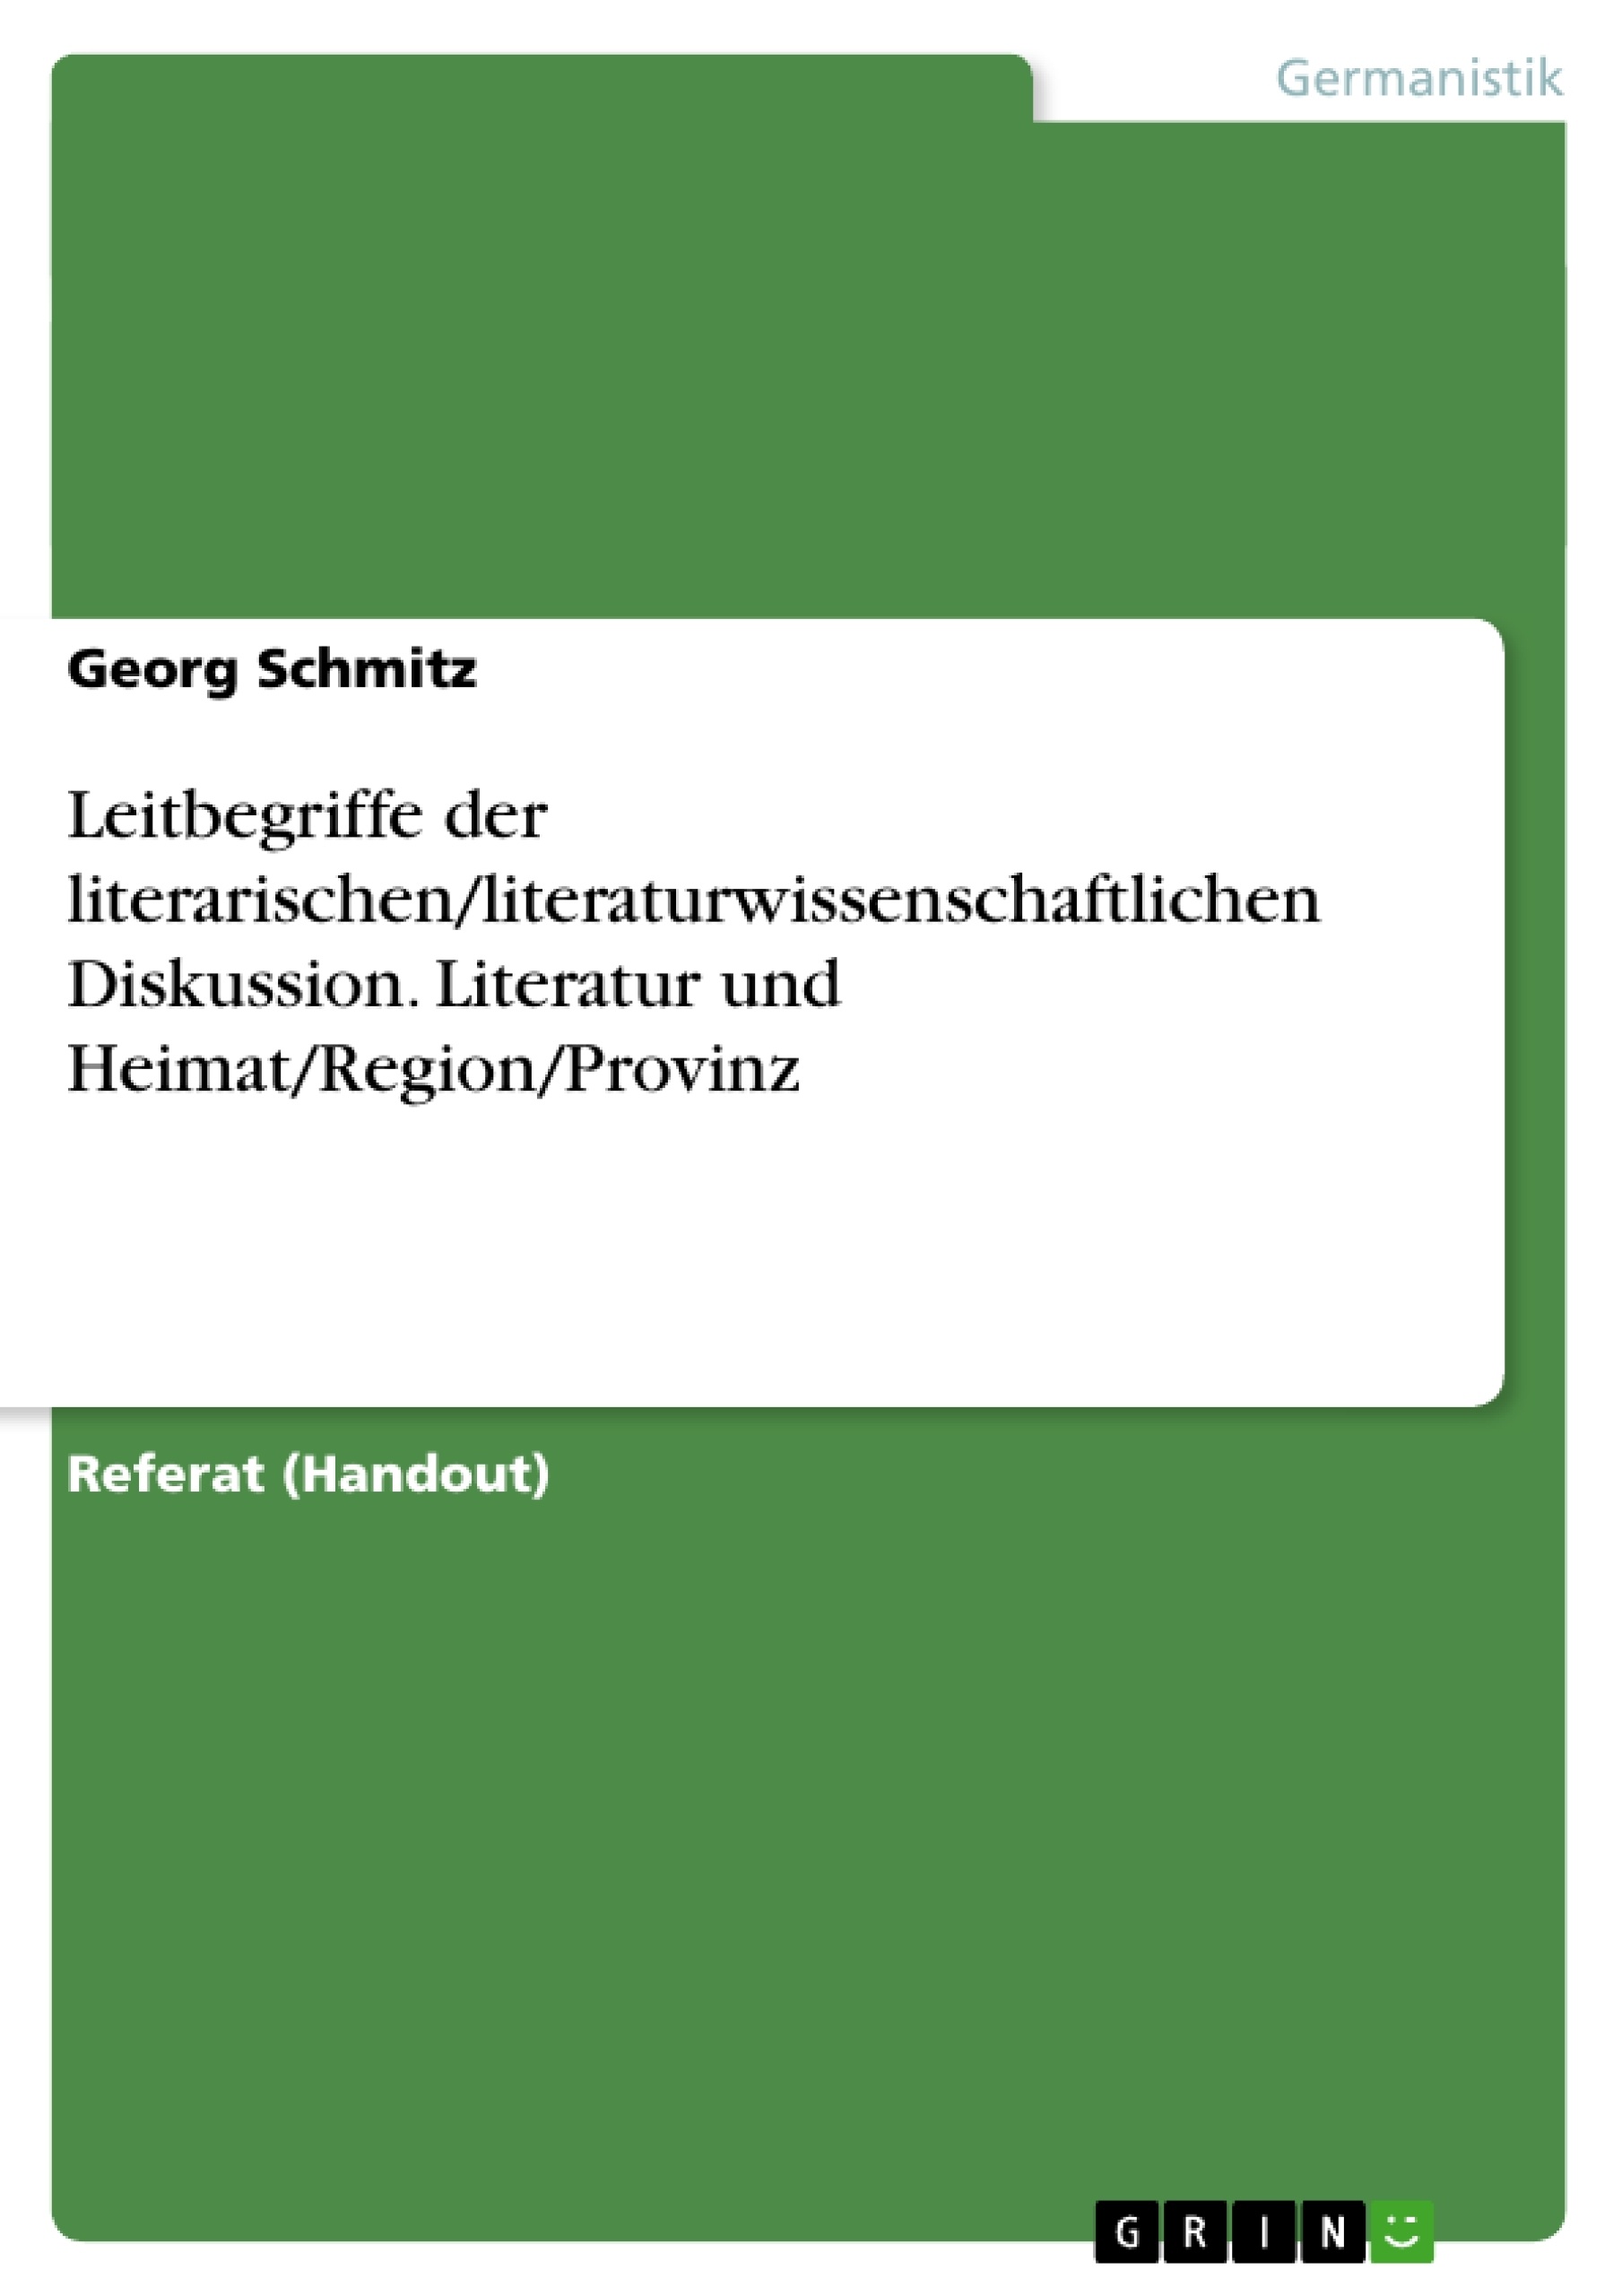 Título: Leitbegriffe der literarischen/literaturwissenschaftlichen Diskussion. Literatur und Heimat/Region/Provinz